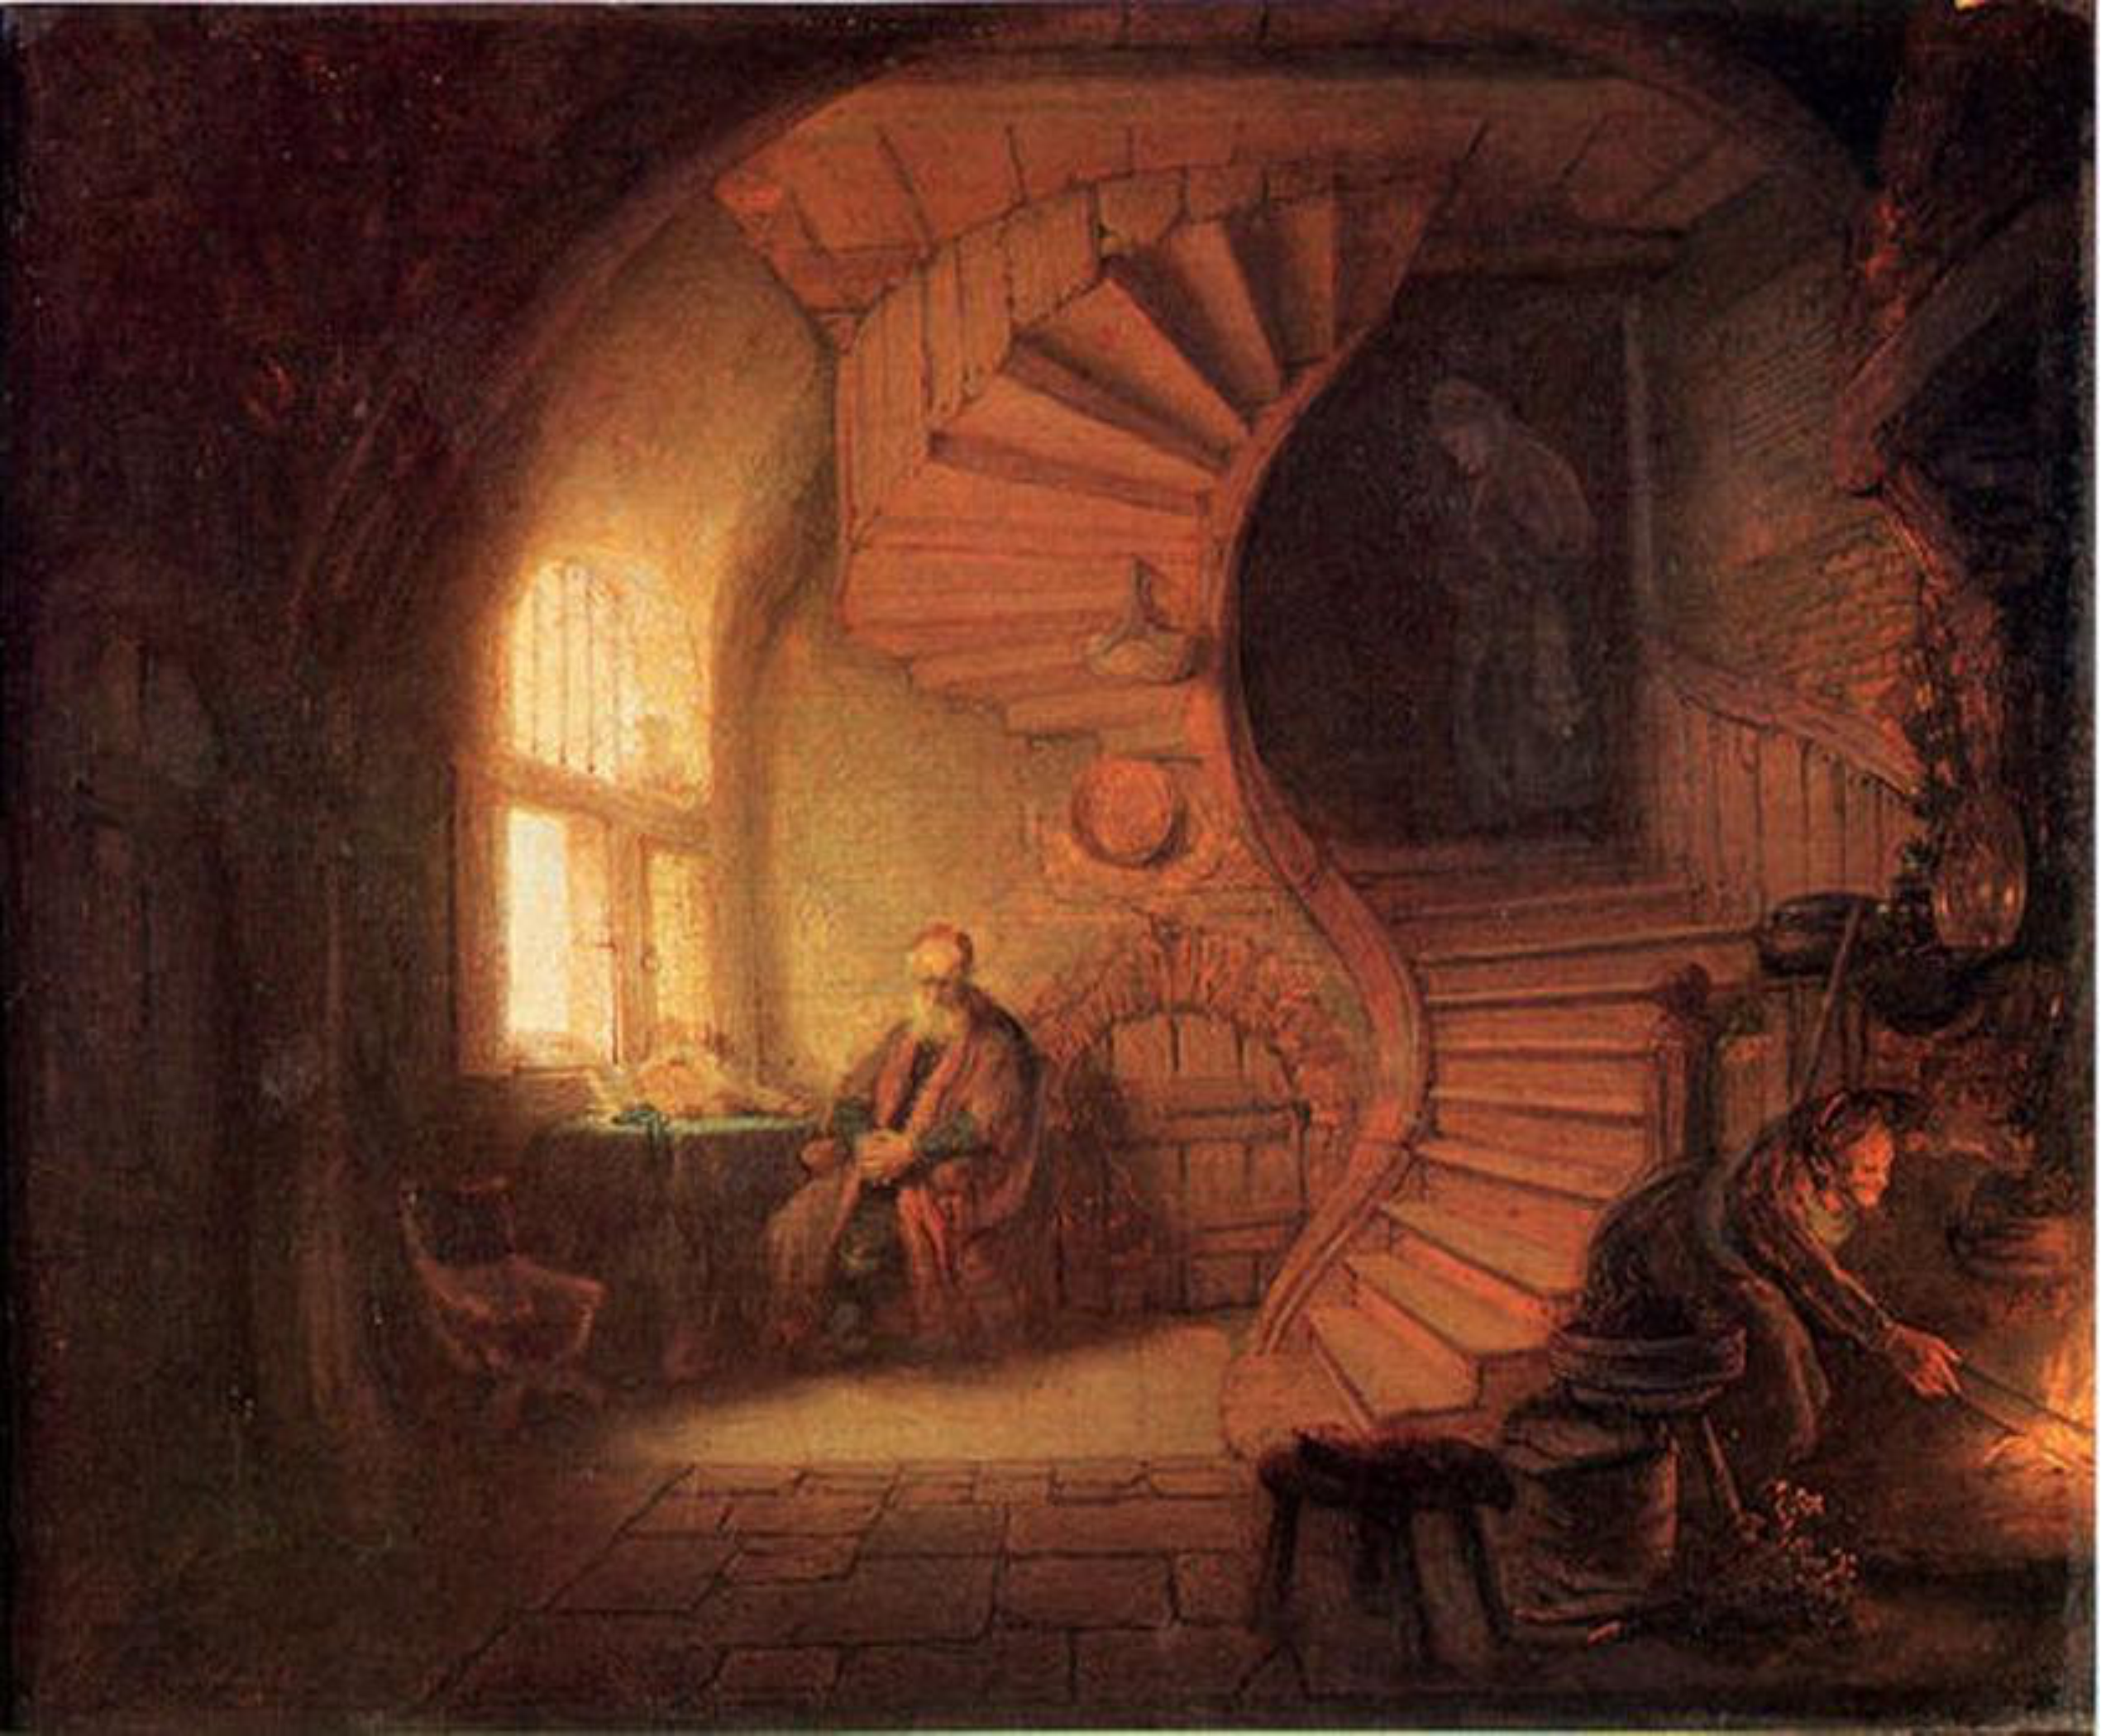 Rembrandt, Filosoof in meditatie, 1632